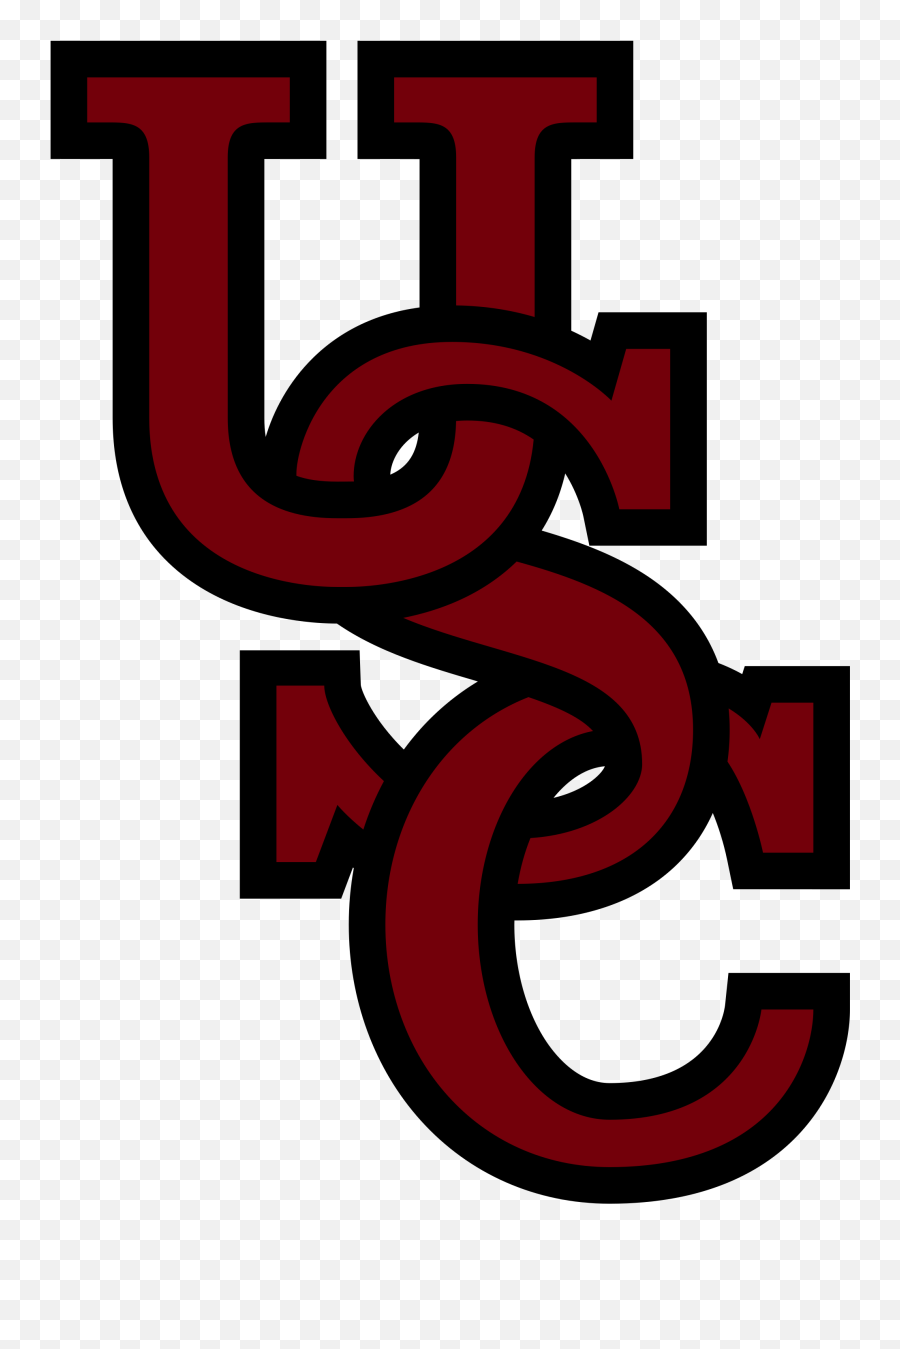 University Of South Carolina Logos Emoji,Hokie Emojis